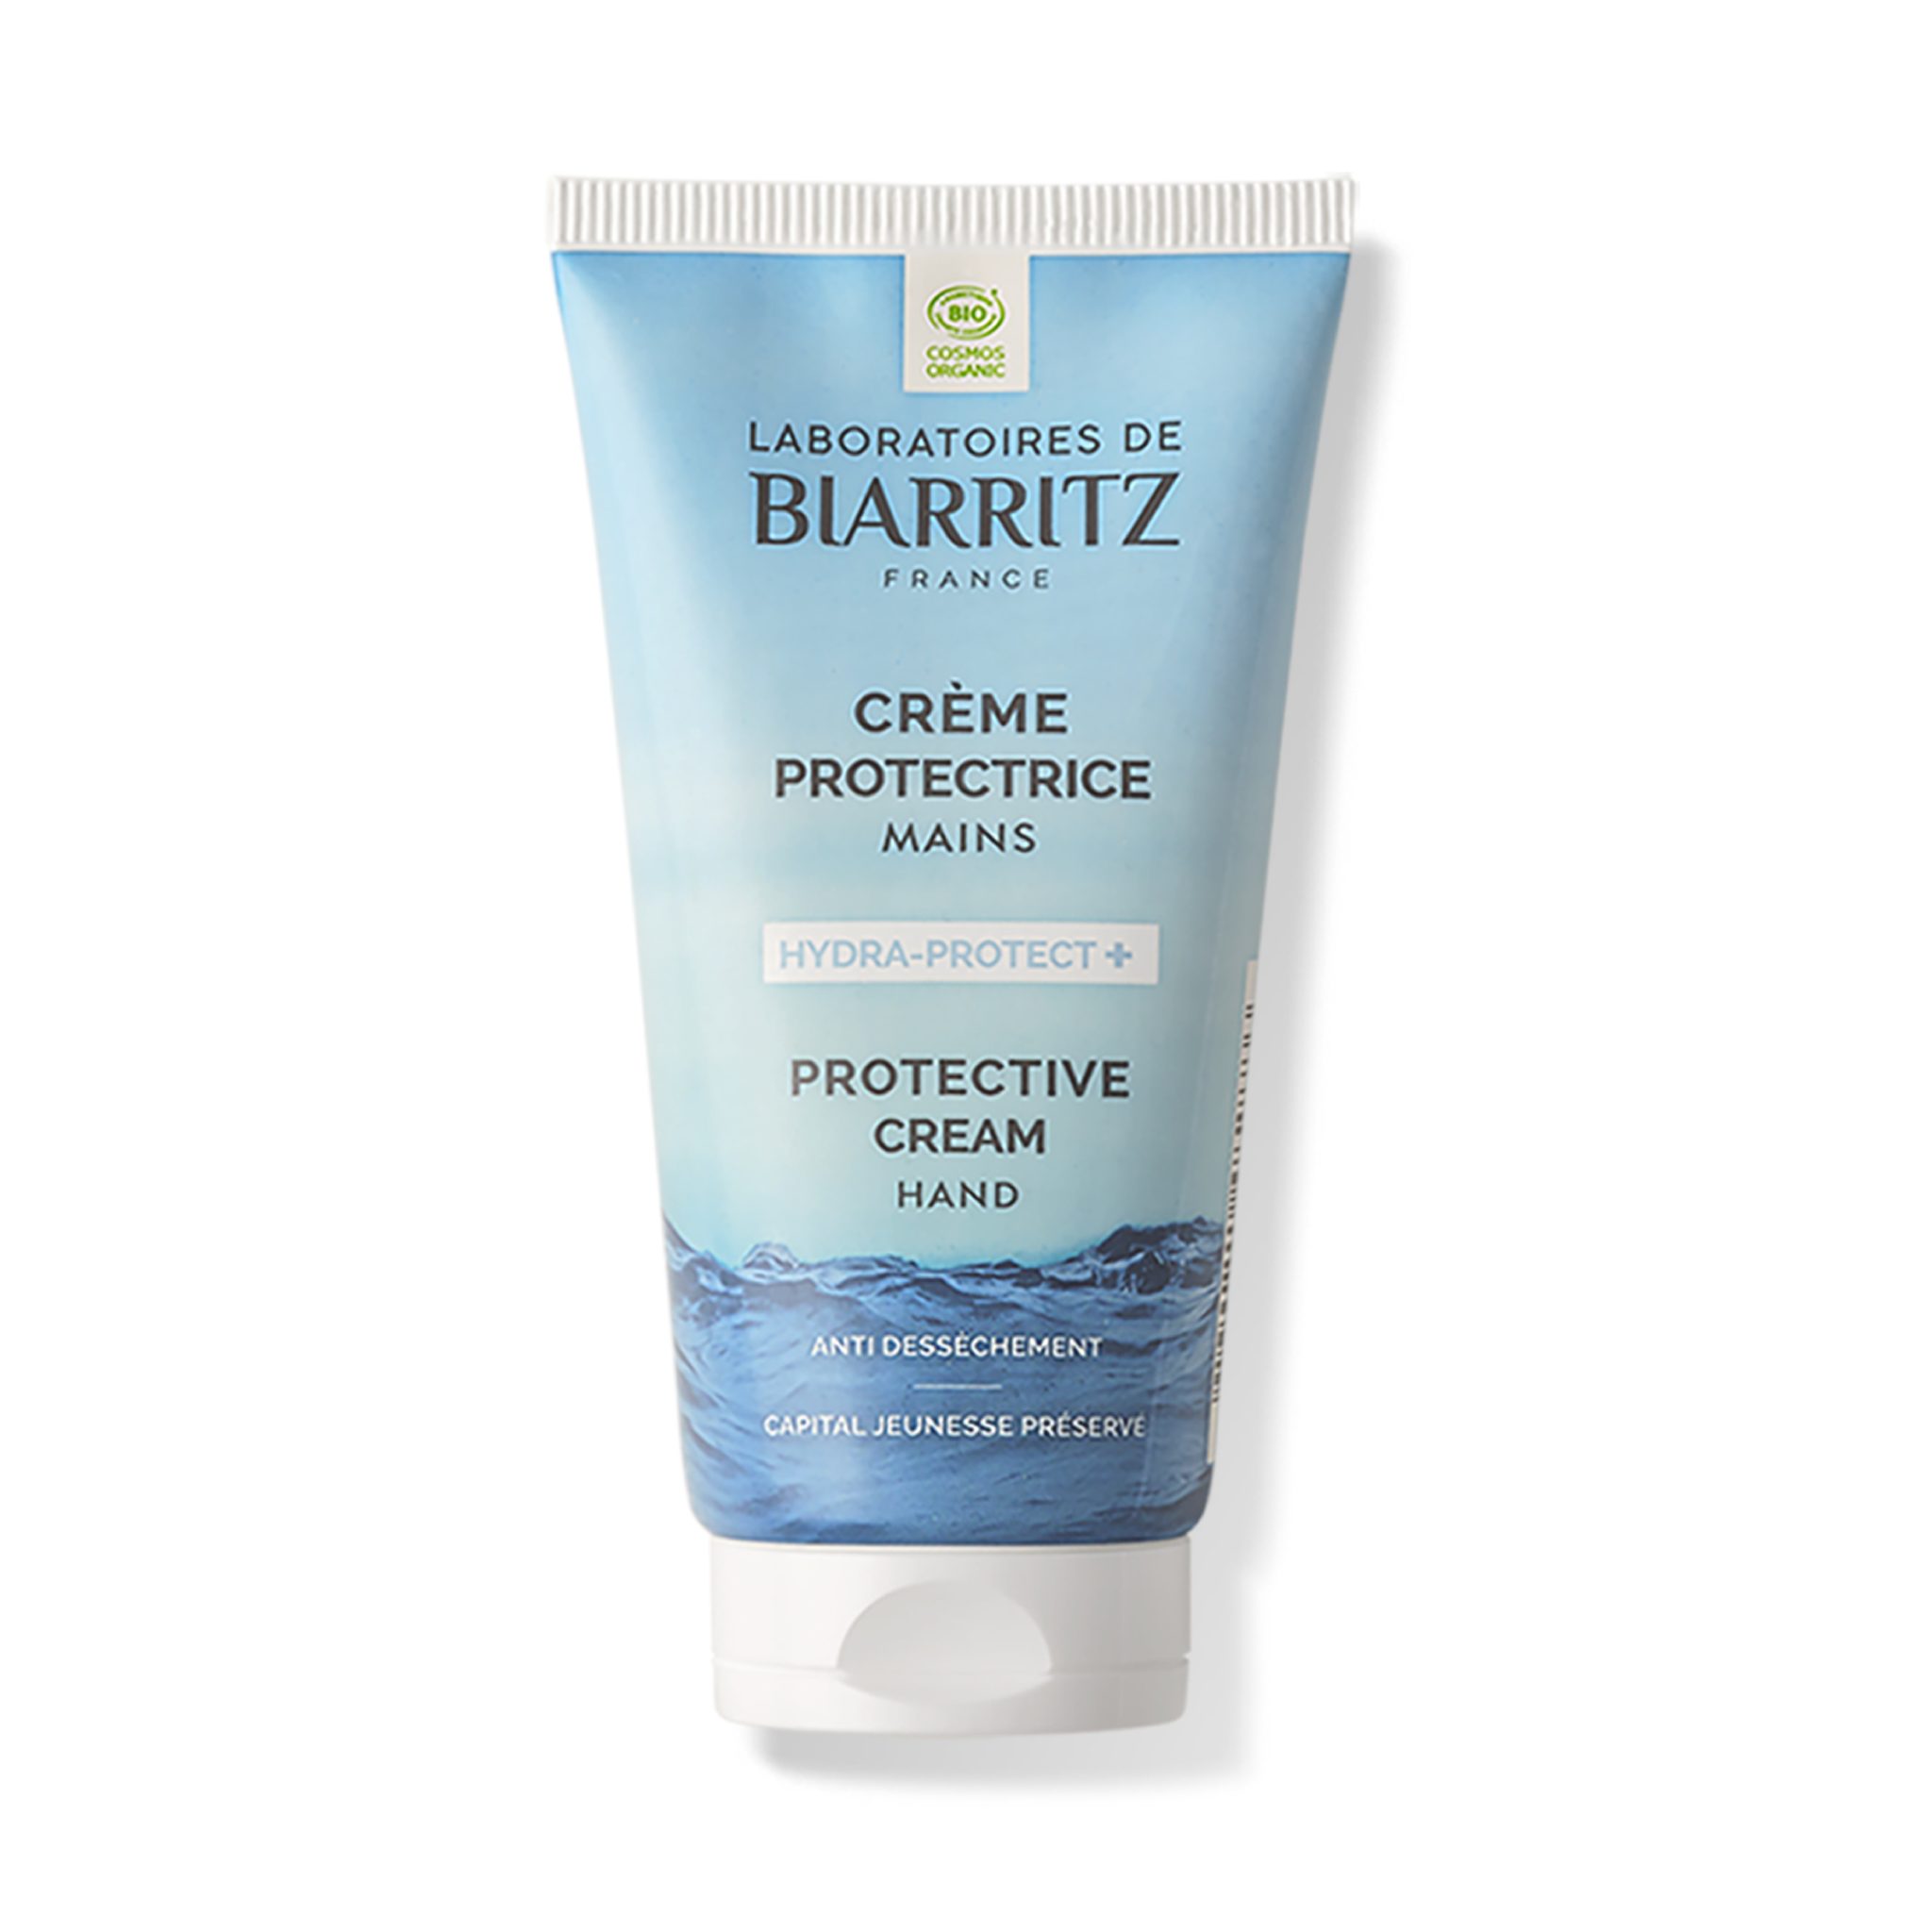 Crème mains hydra-protect+ bio